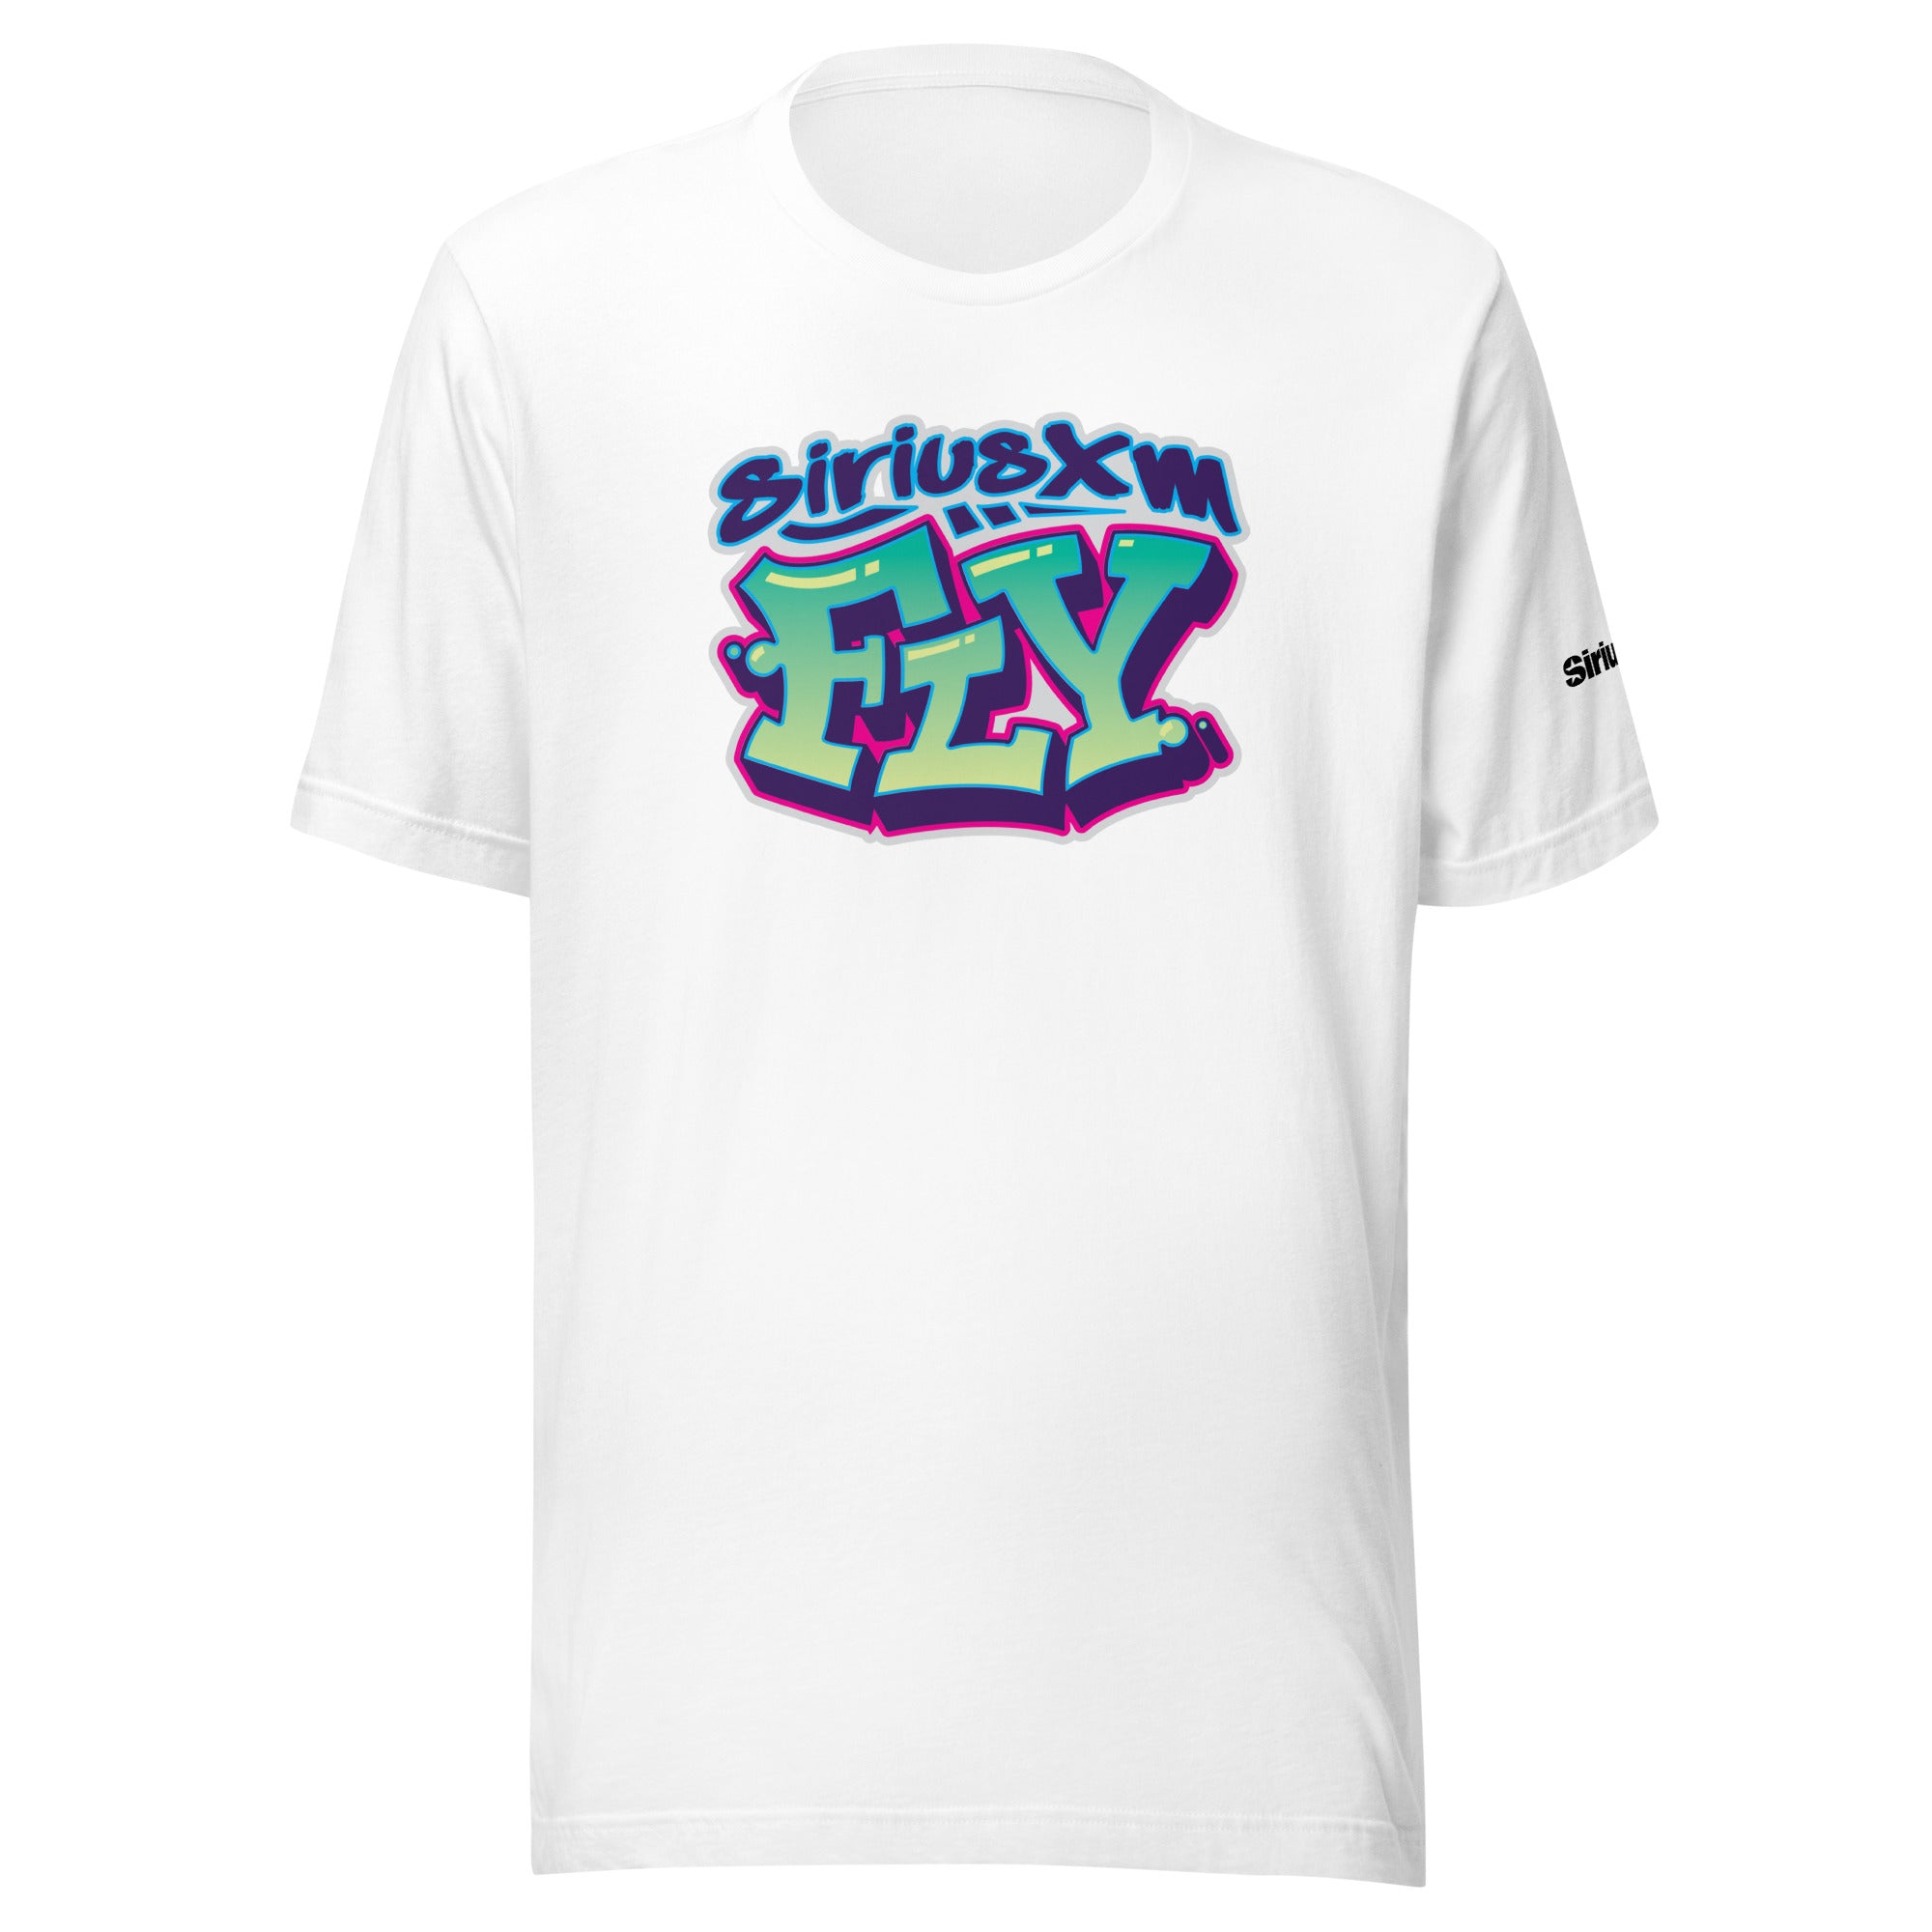 SiriusXM Fly: T-shirt (White)